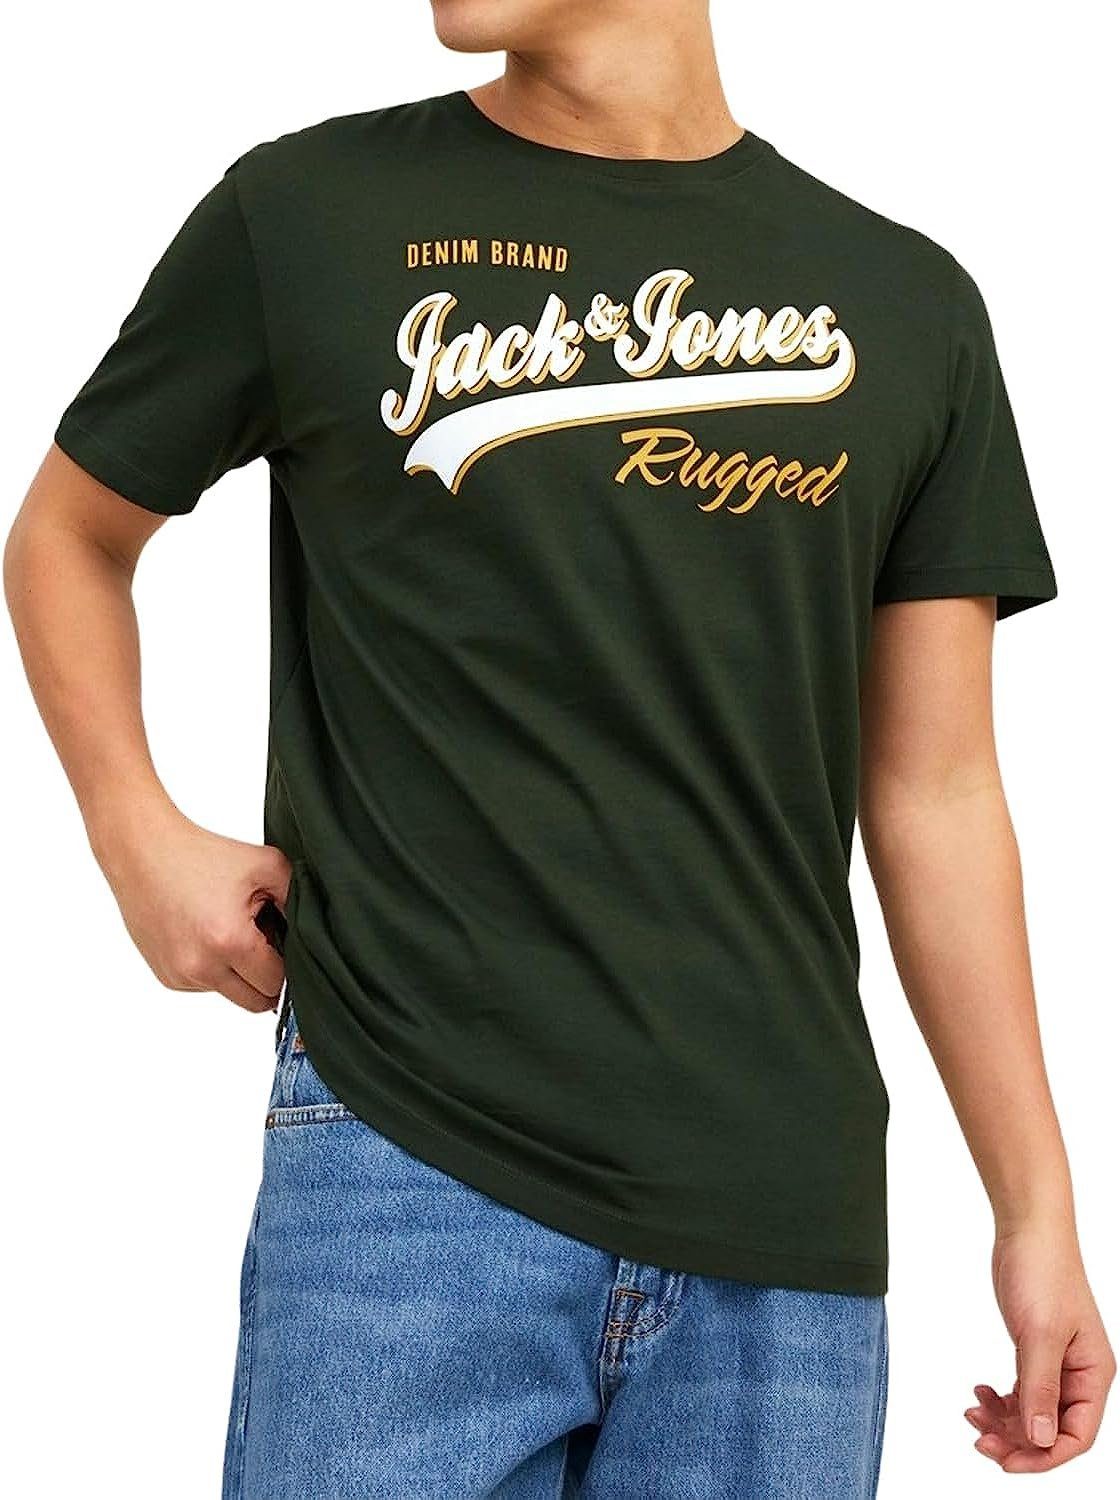 & Print-Shirt Jones aus 17 Jack 5er Aufdruck, Baumwolle (5er-Pack) Shirts Slim mit Mix